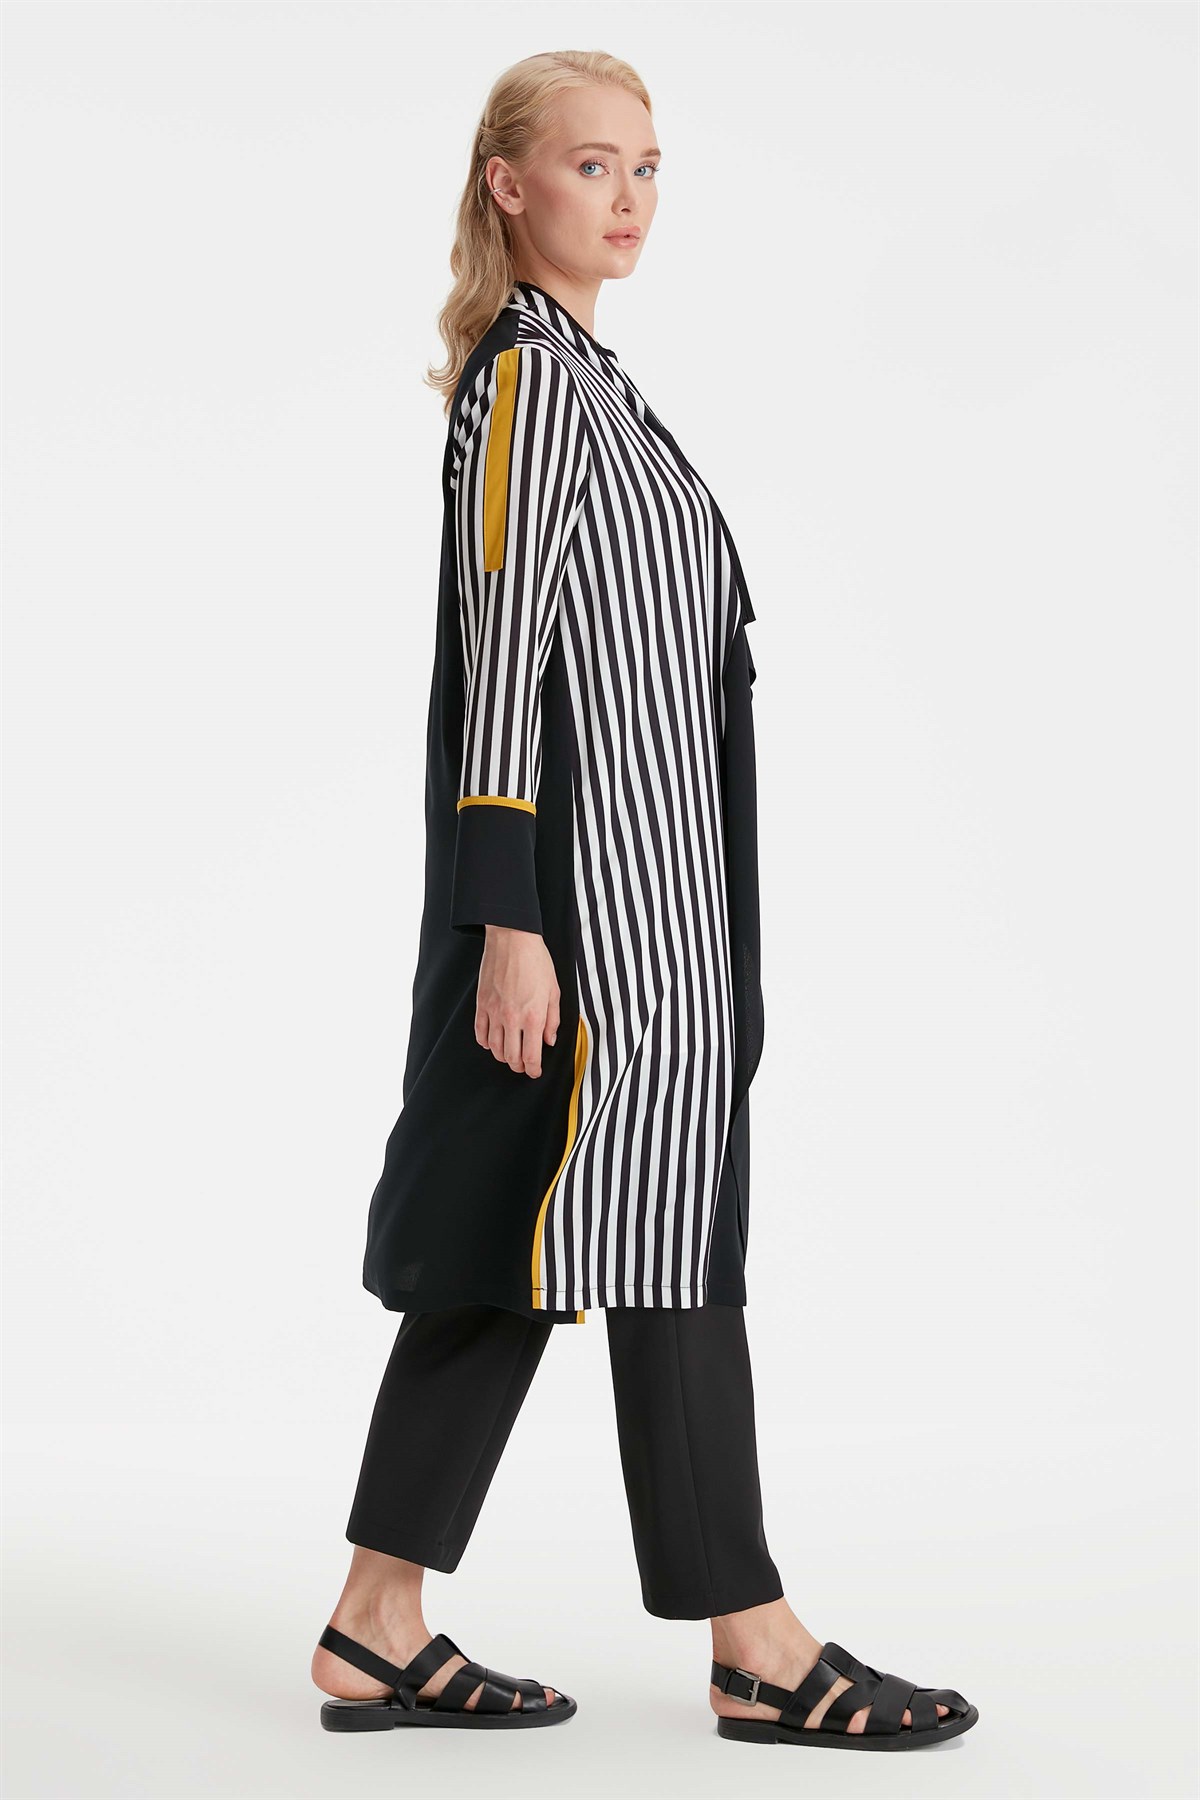 Mendil Yaka Yırtmaç Detaylı Çizgili Ceket Kolsuz Bluz Takım - Siyah